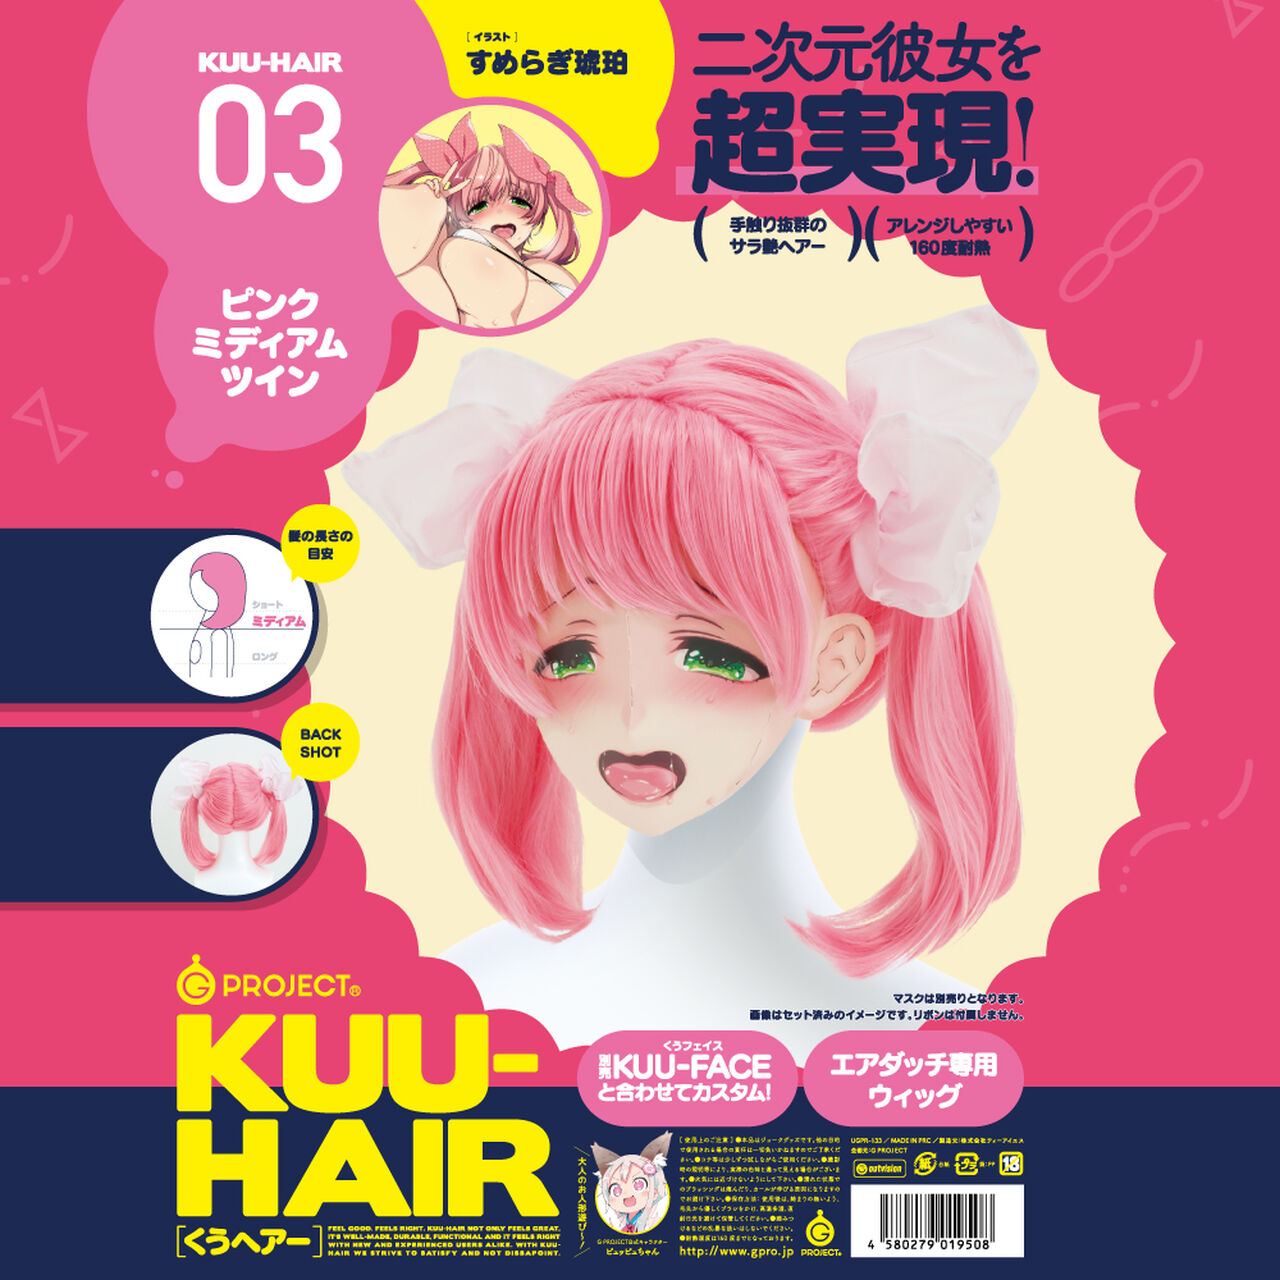 KUU-HAIR 03. PINK MEDIUM TWIN SUMERAGI KOHAKU,, large image number 0